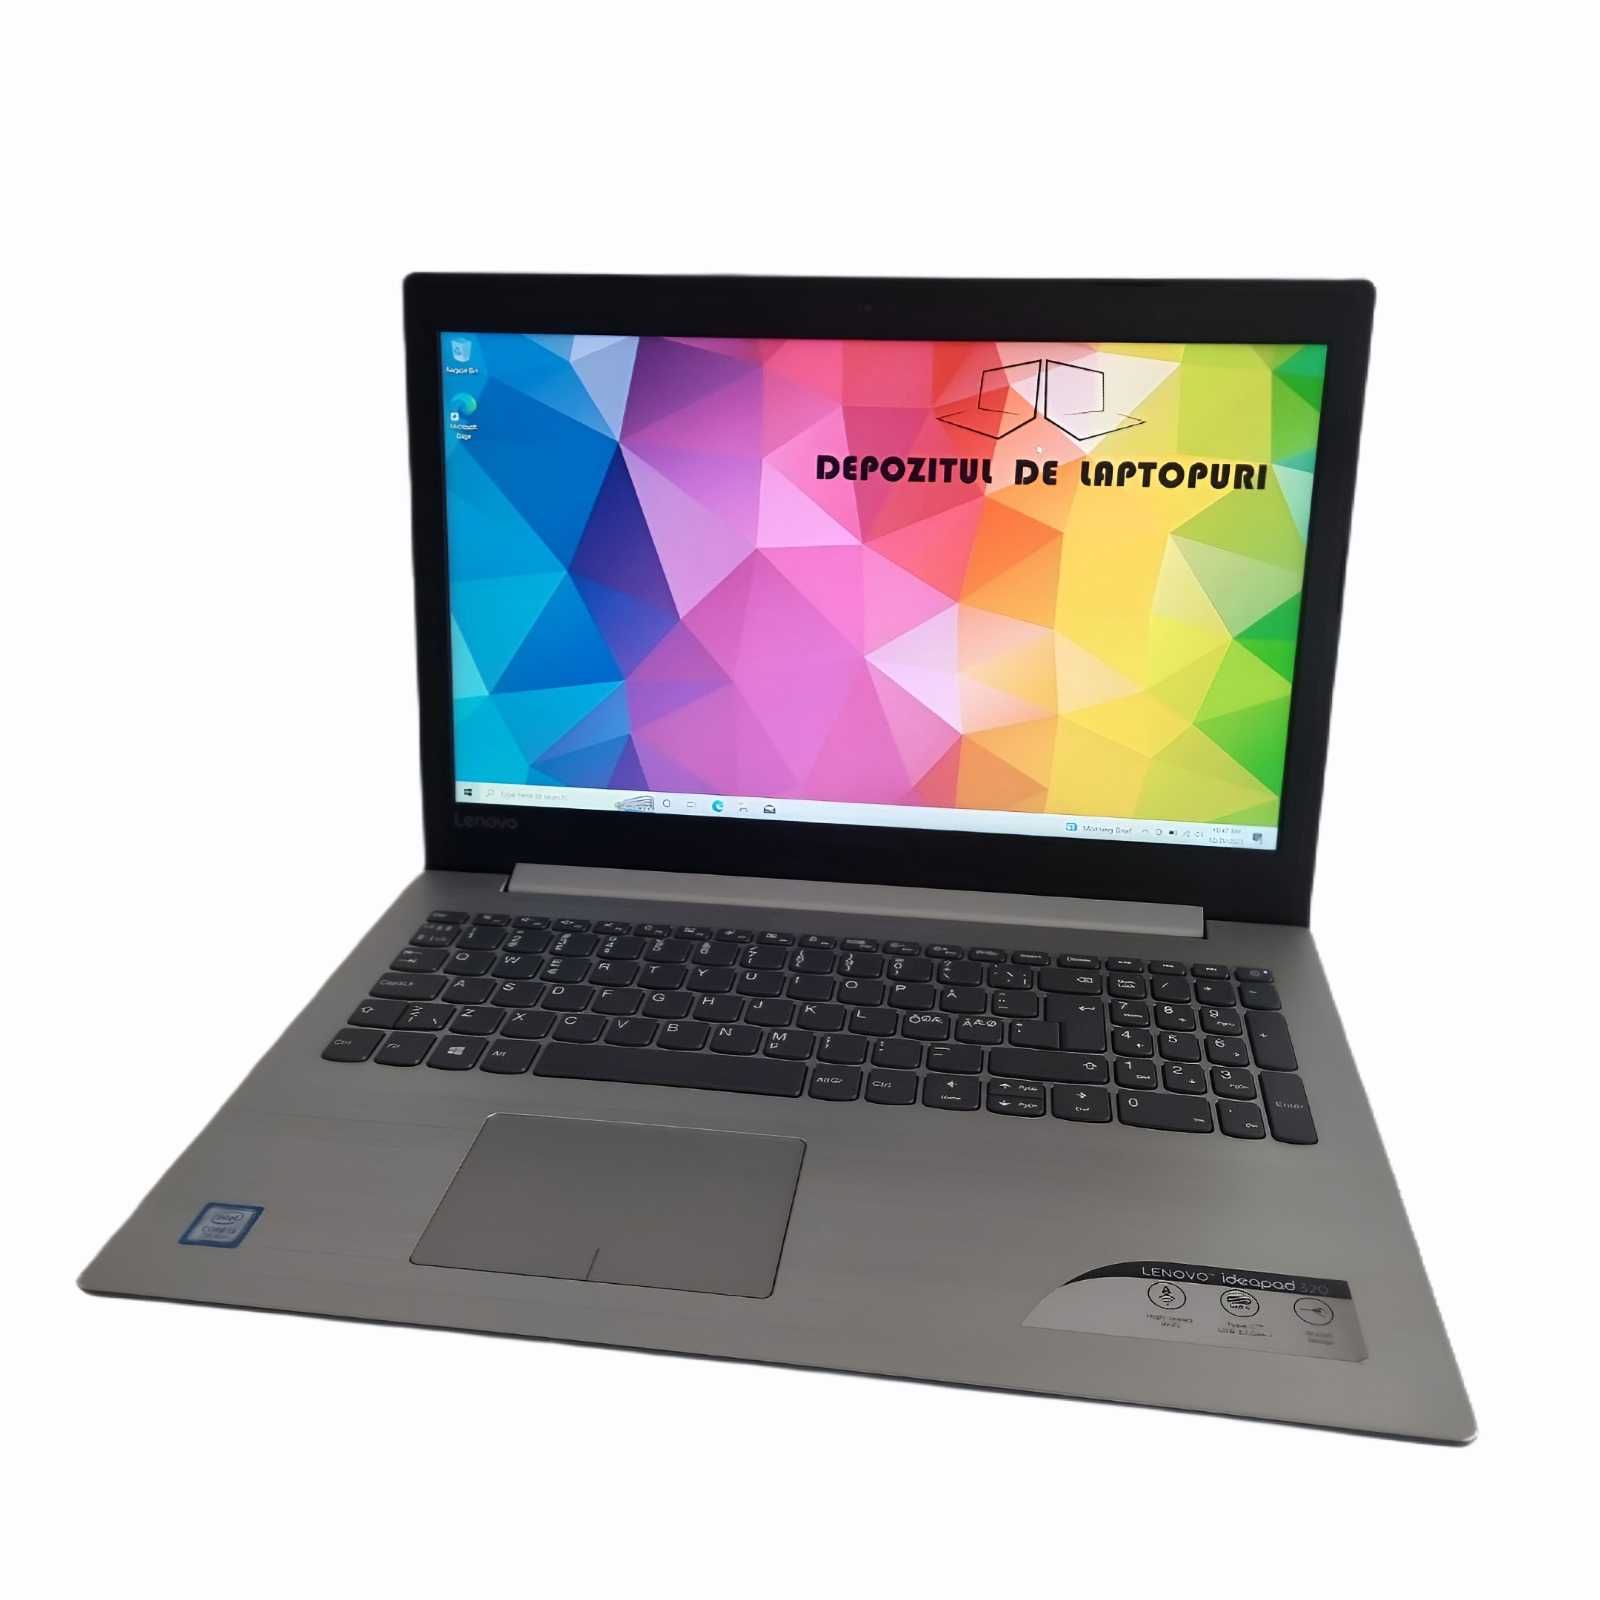 Laptop Lenovo IdeaPad 320 15,6"HD i3-7100U 1 TB SSHD 8 GB RAM